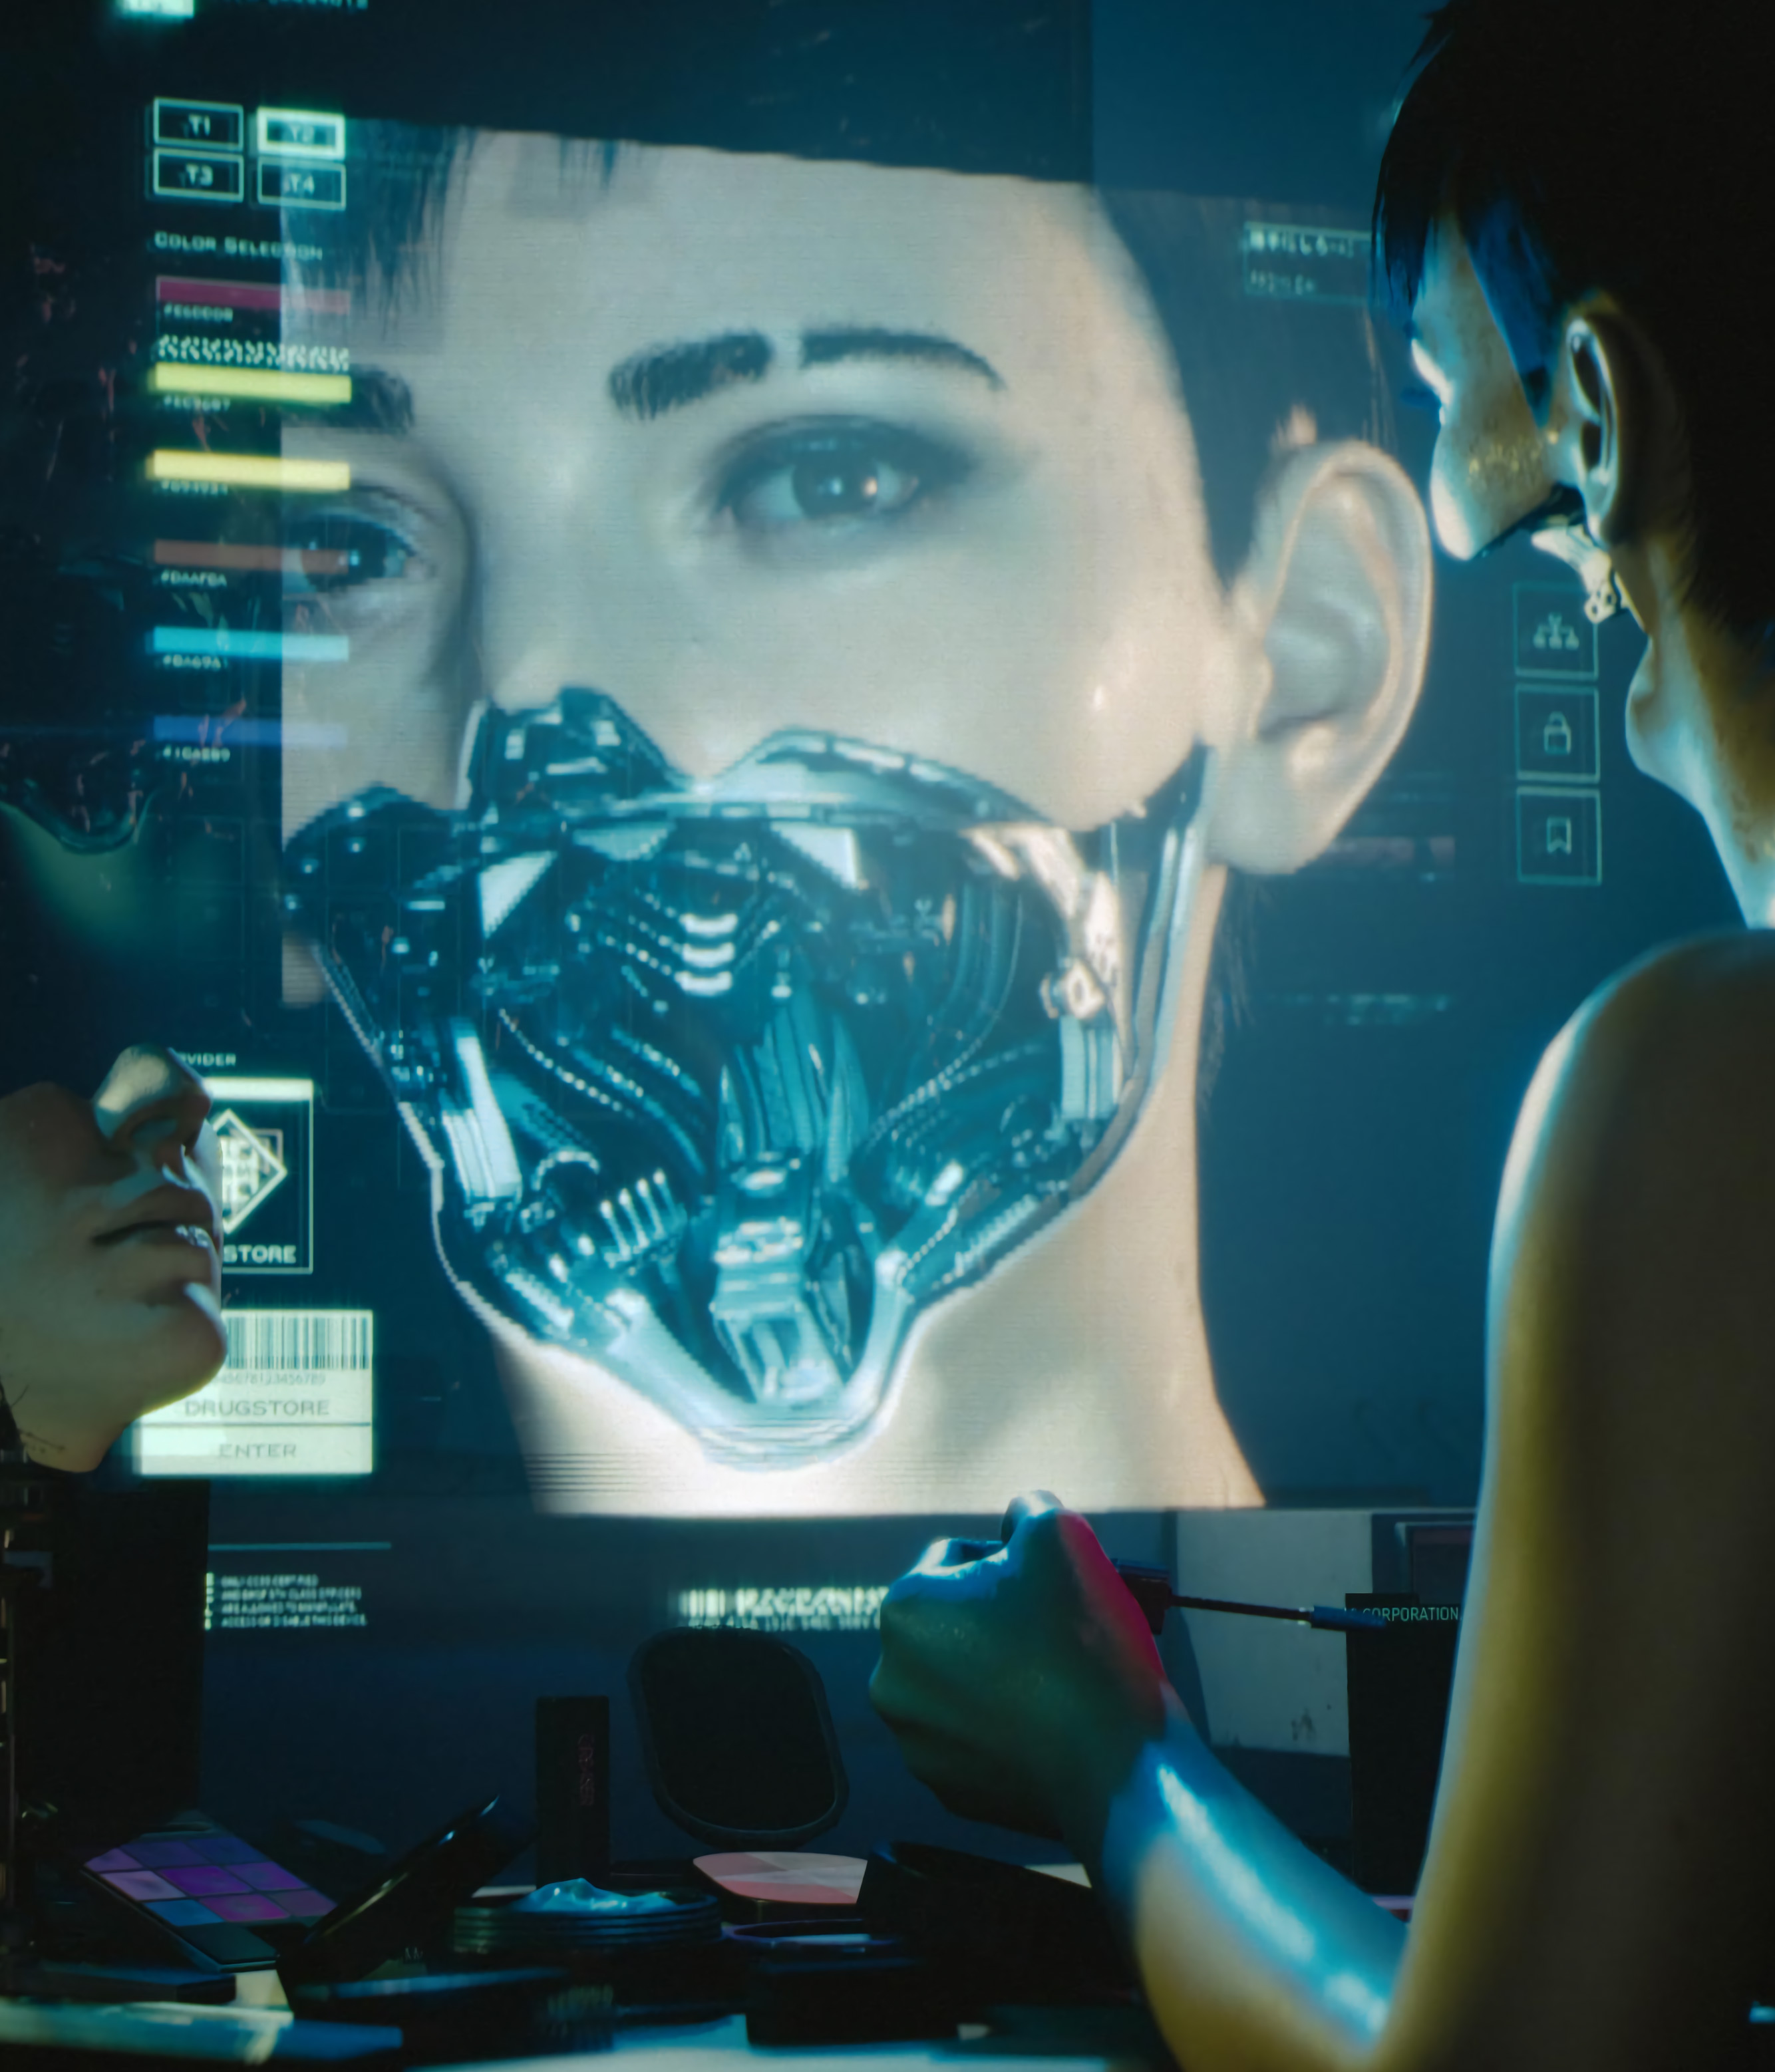 Мод для Cyberpunk 2077. видеосравнении и разборе Cyberpunk 2077 версии... в...